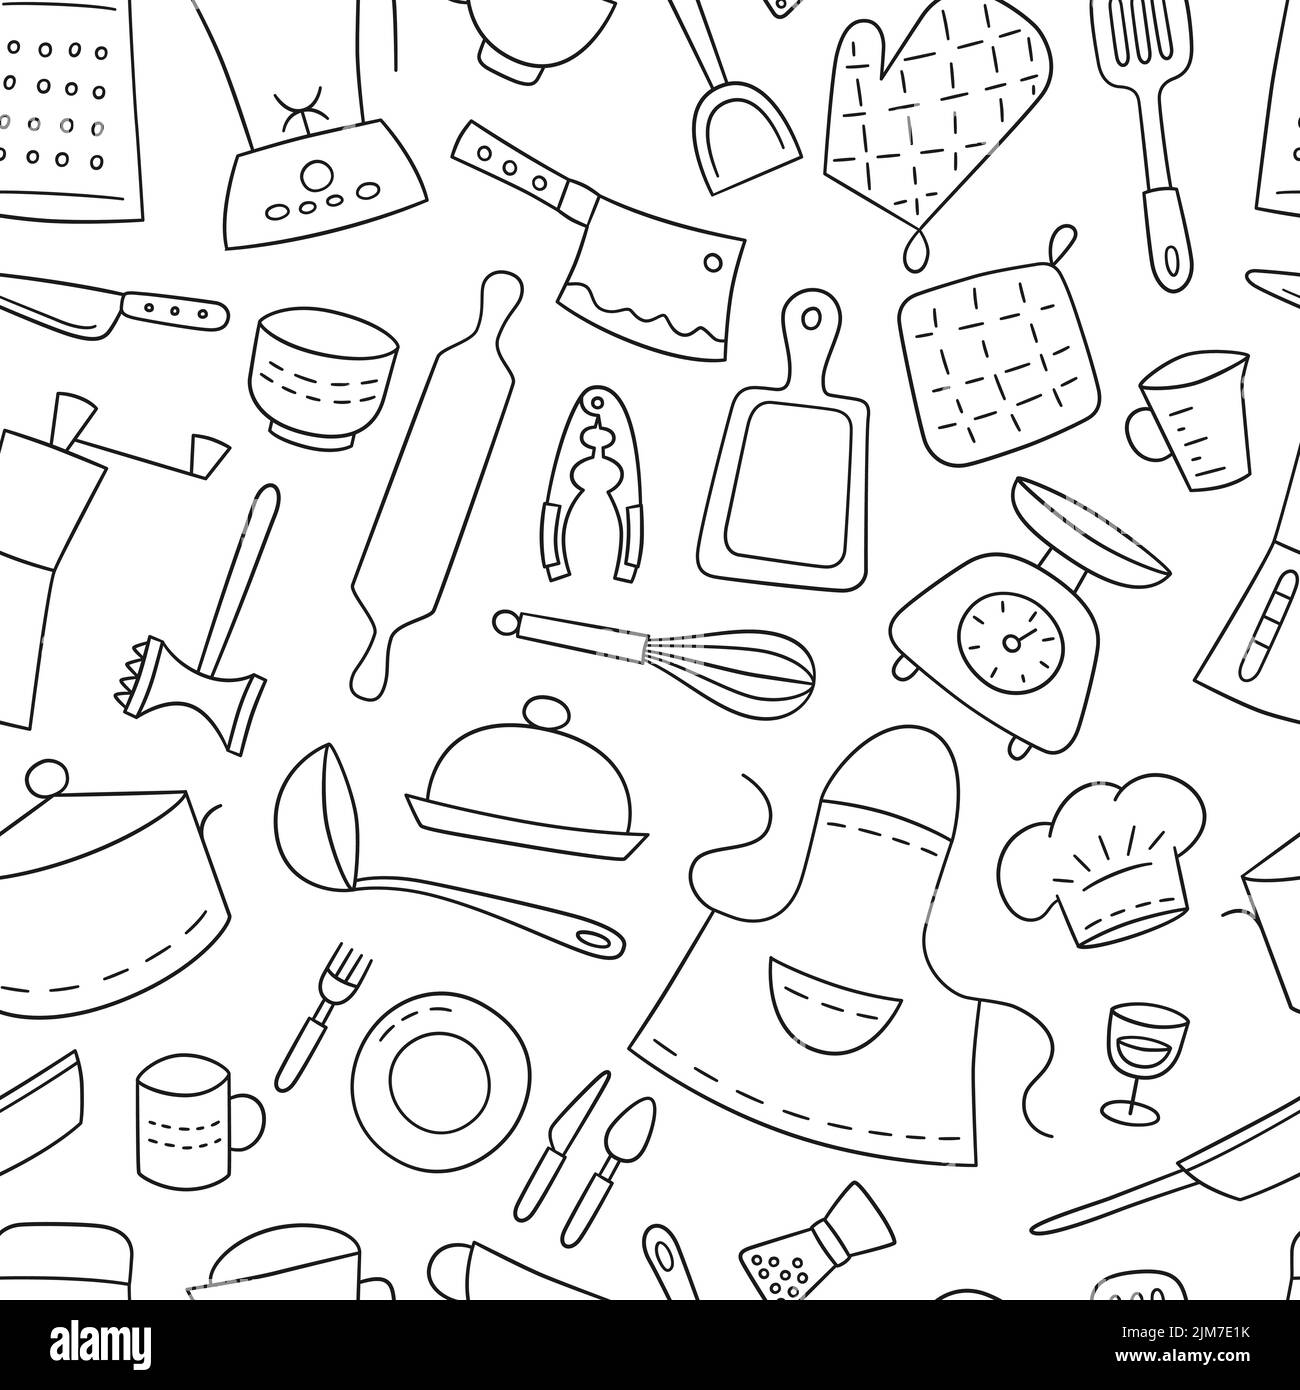 Küchengeräte und Geschirr. Kochen. Nahtloses Muster. Handgezeichnete Vektorgrafik Stock Vektor